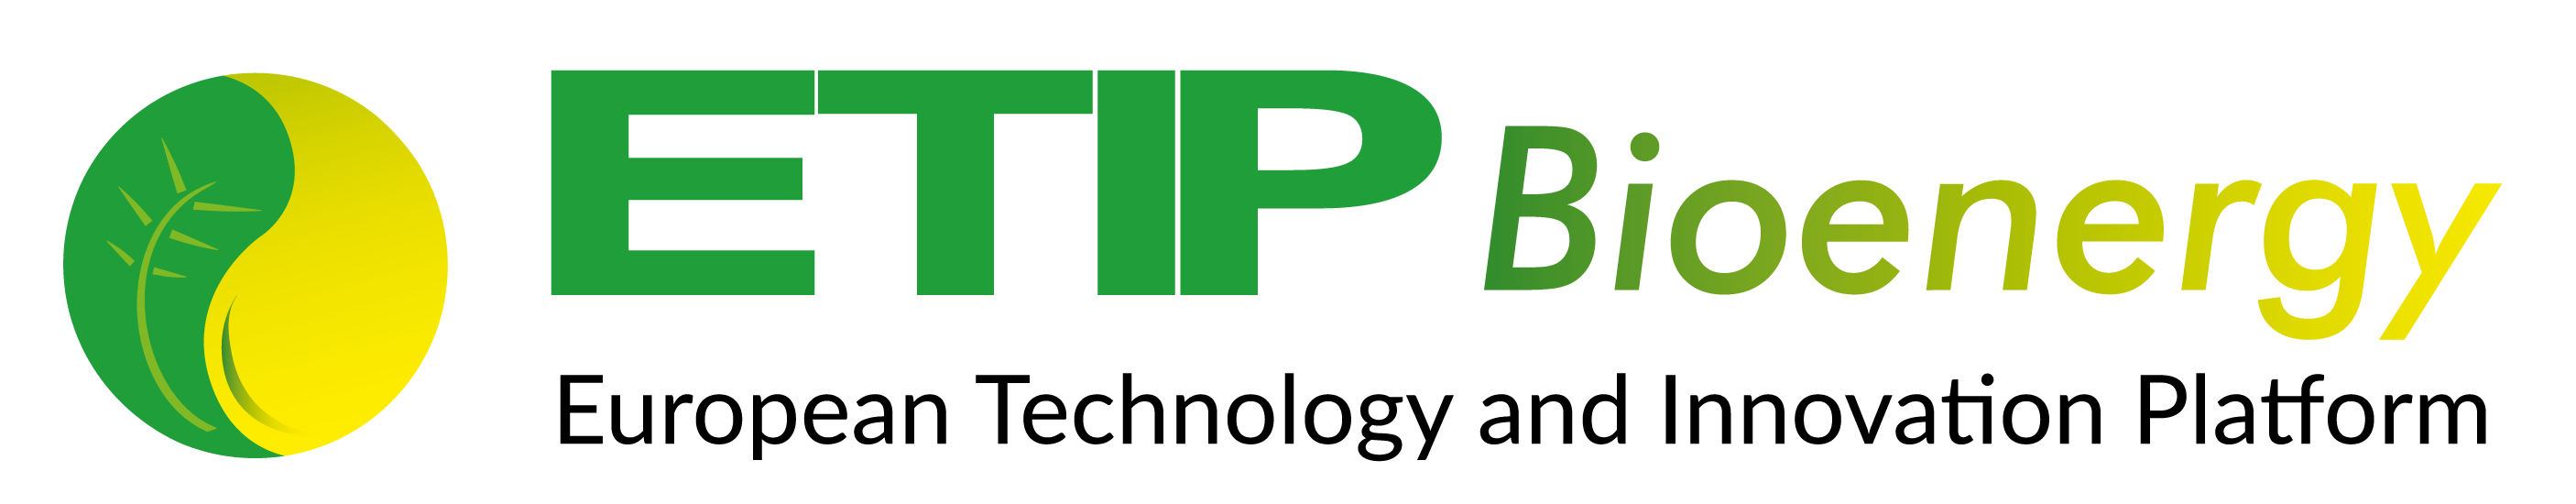 ETIP Bioenergy-SABS